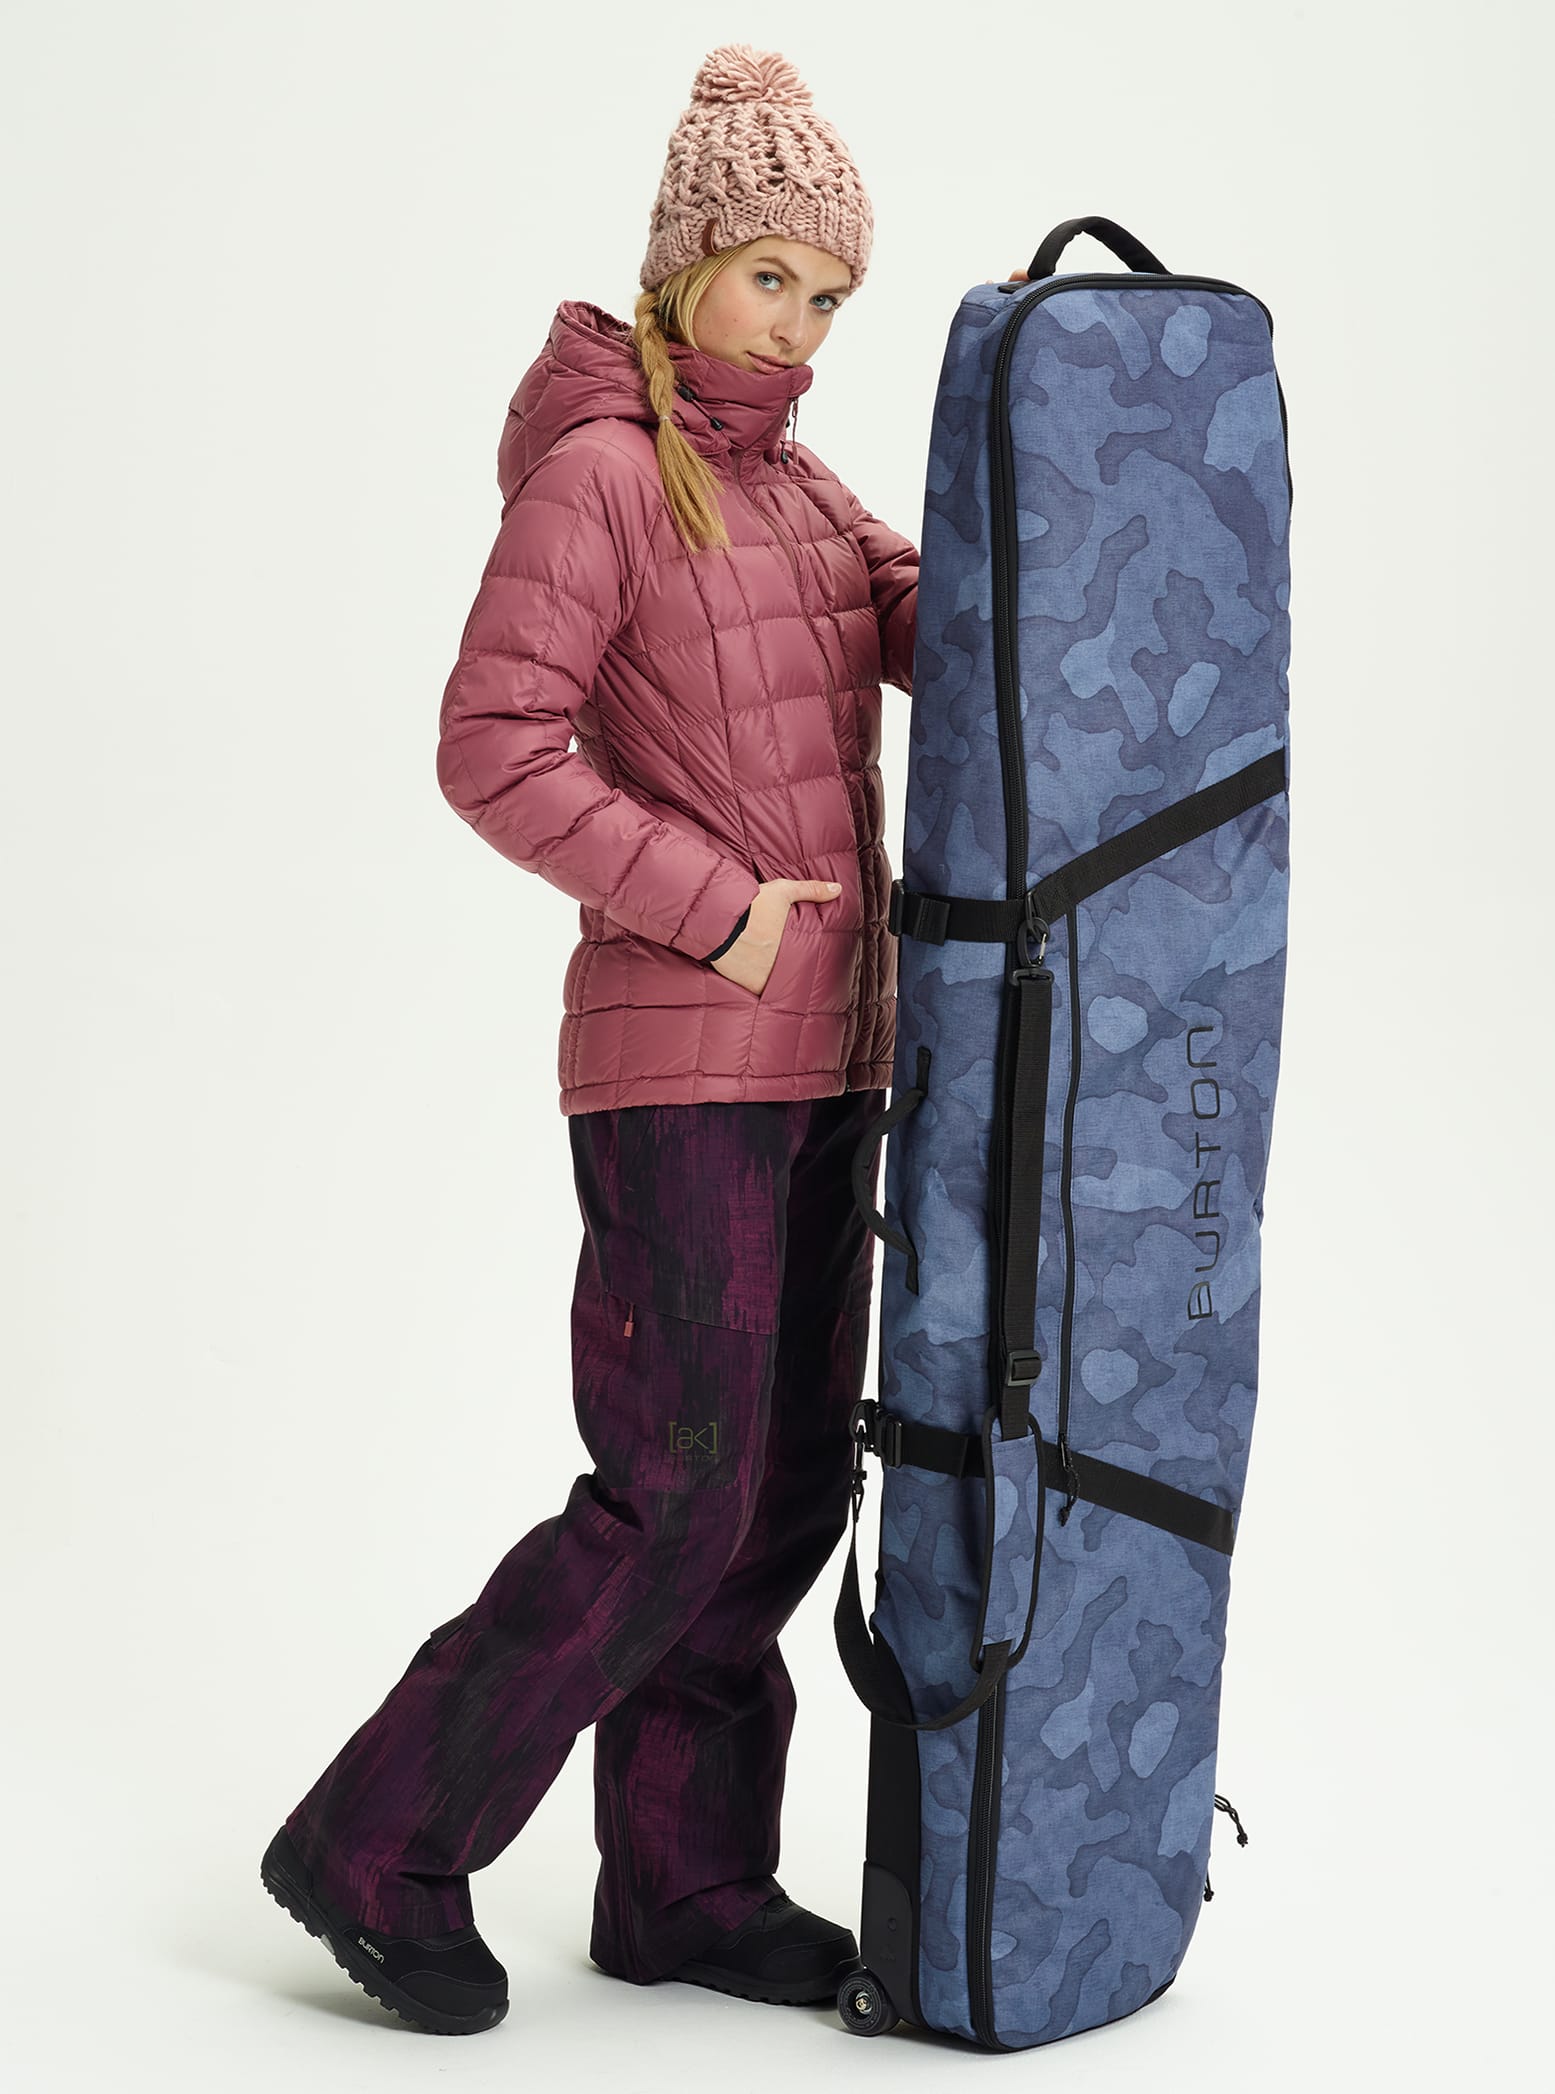 Burton Snowboard Bag Size Chart